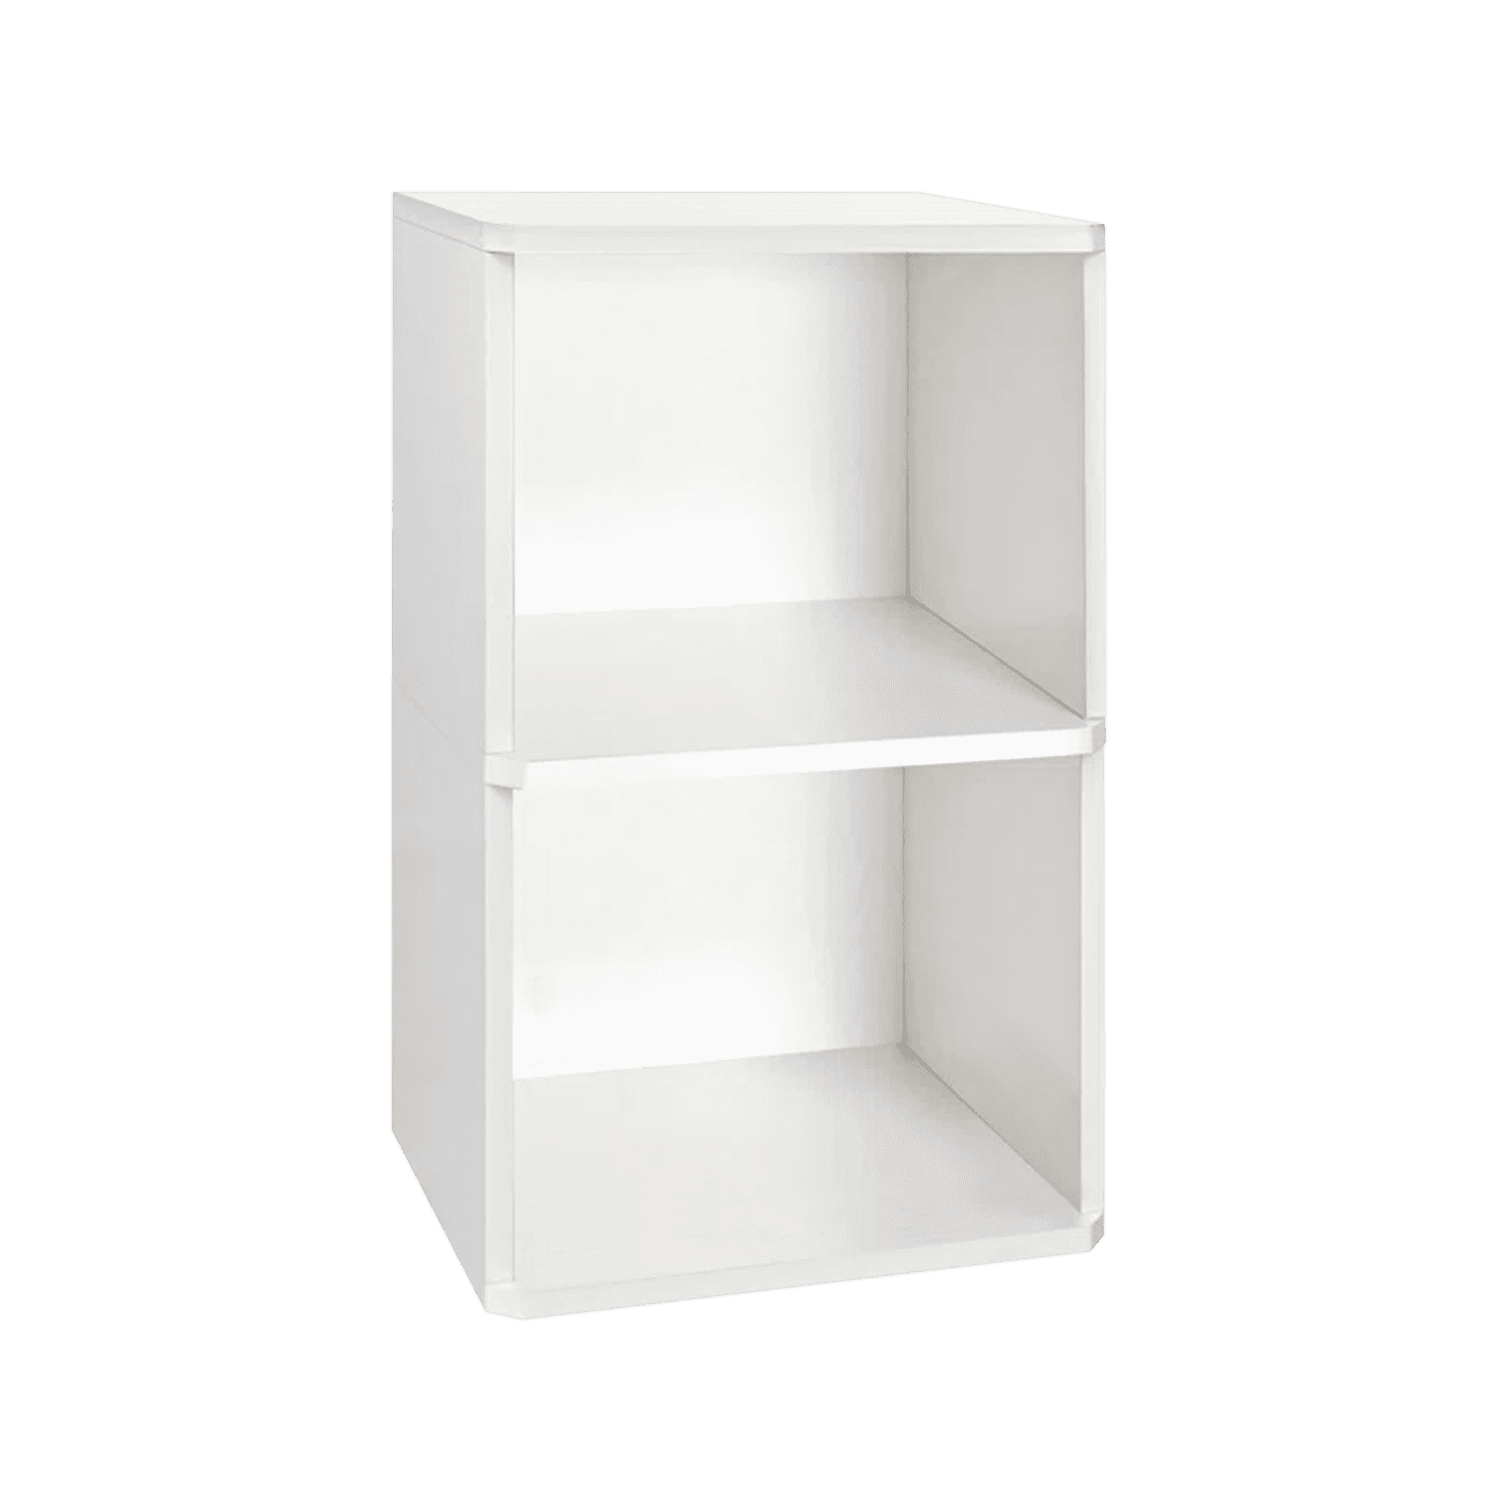 Skywin Drawer Storage 2 Tier Sliding Cabinet Pull Out Organizer | Bathroom Organizer | Under Sink Organizers and Storage | Cabinet Organizers and